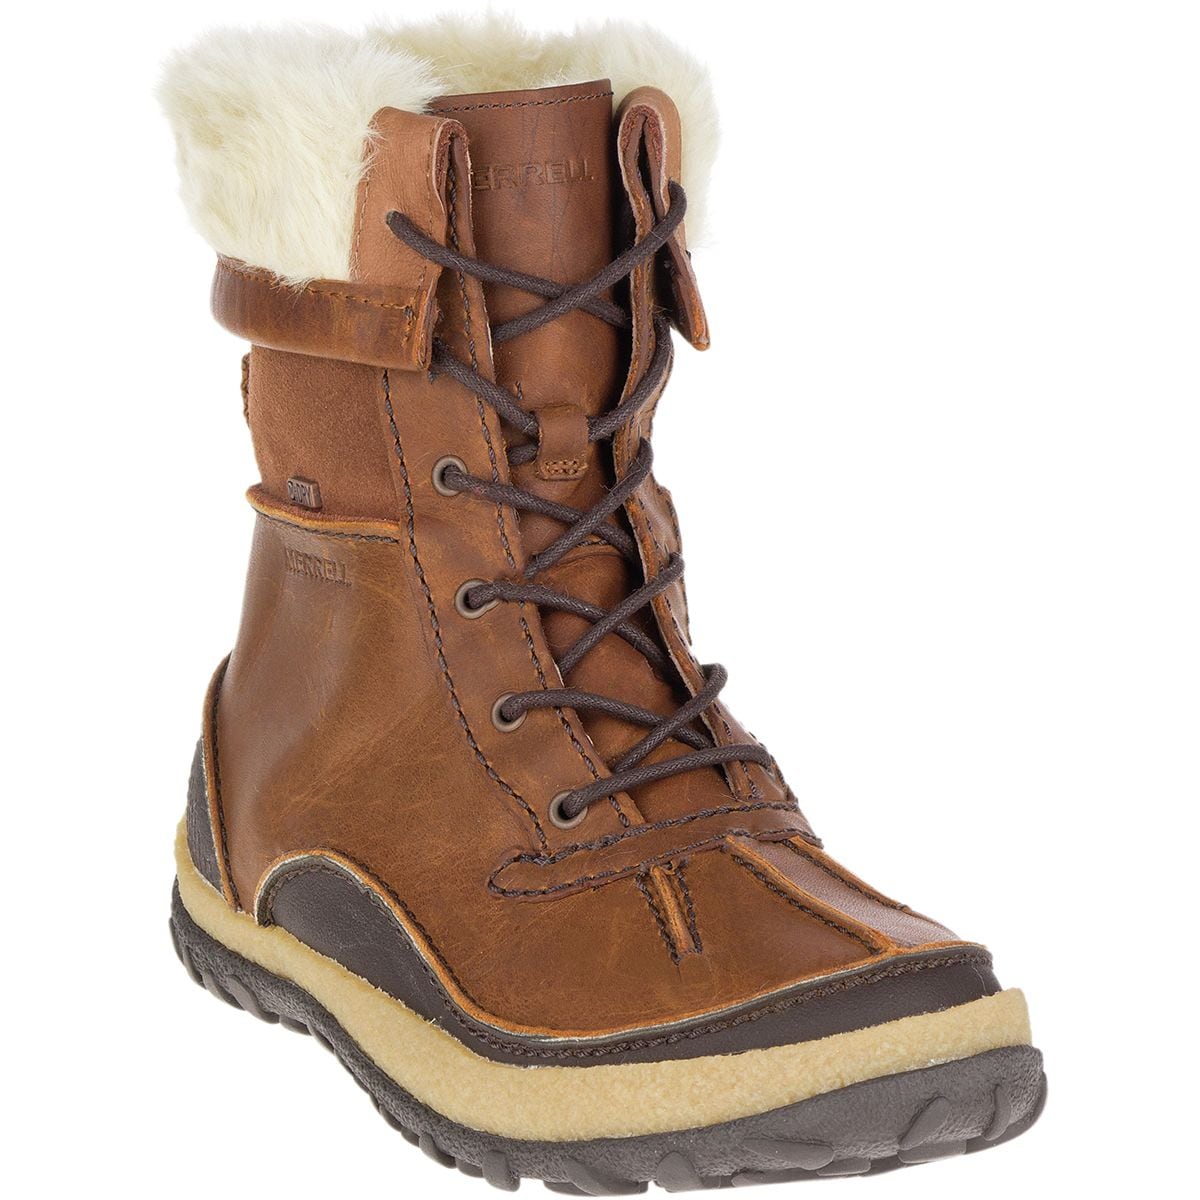 Merrell Tremblant Polar Waterproof Boot - Women's - Footwear